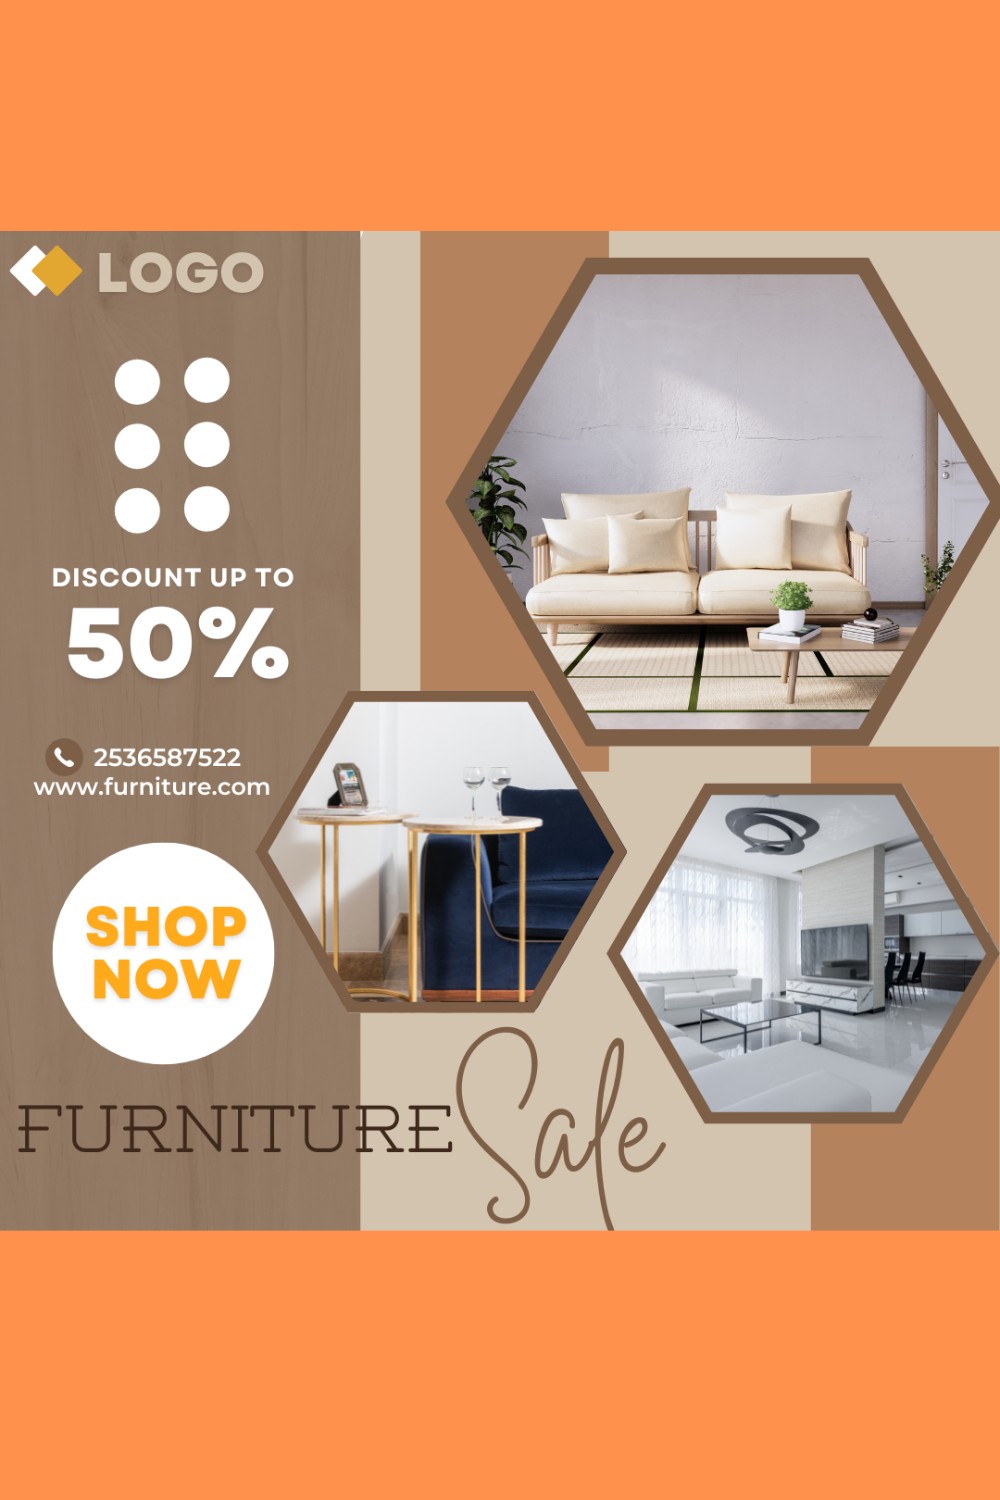 Flyer Furniture Sale Template Design pinterest image.